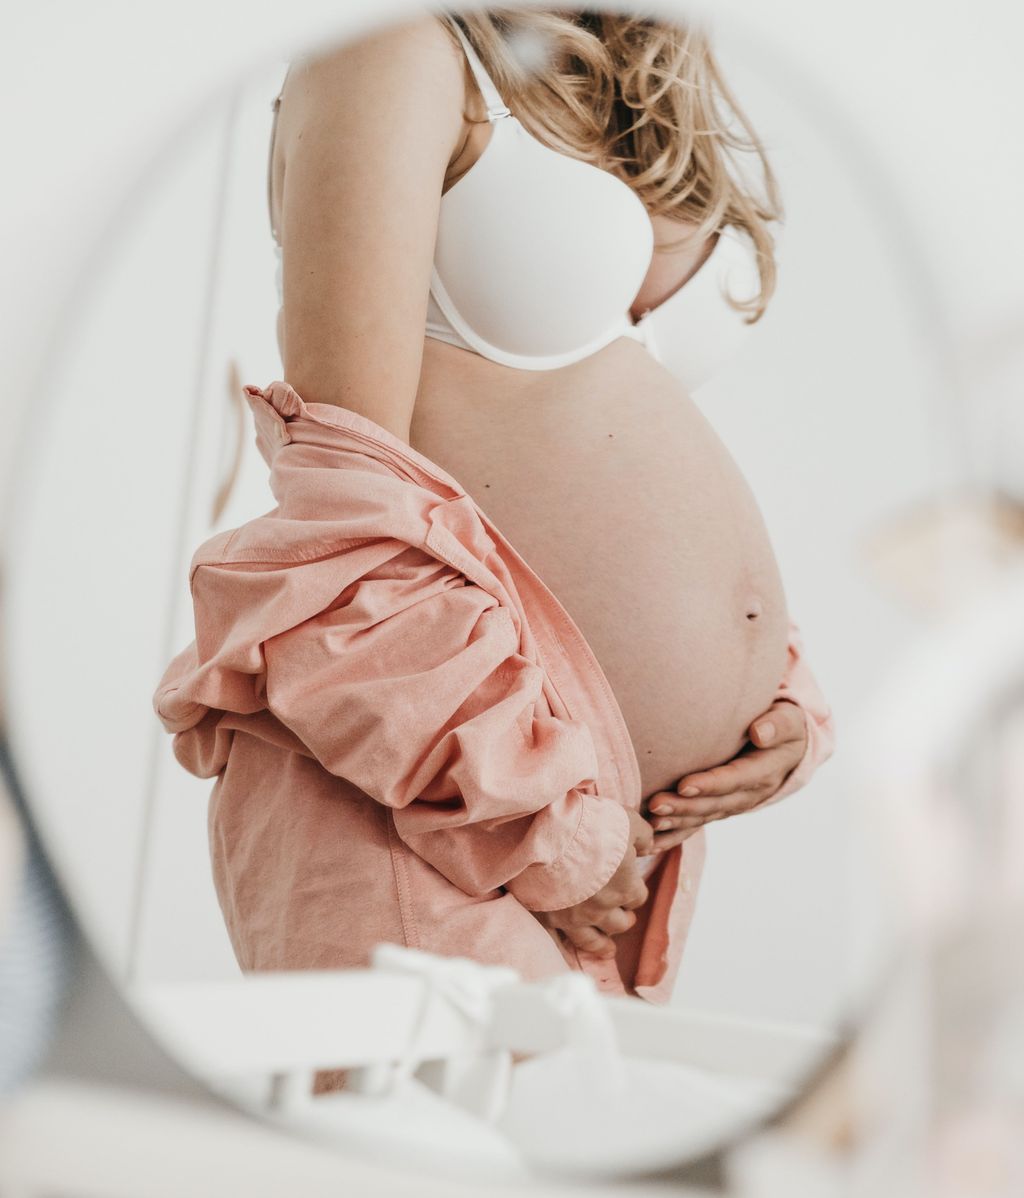 La tripa crece mucho durante el embarazo. FUENTE: Pexels